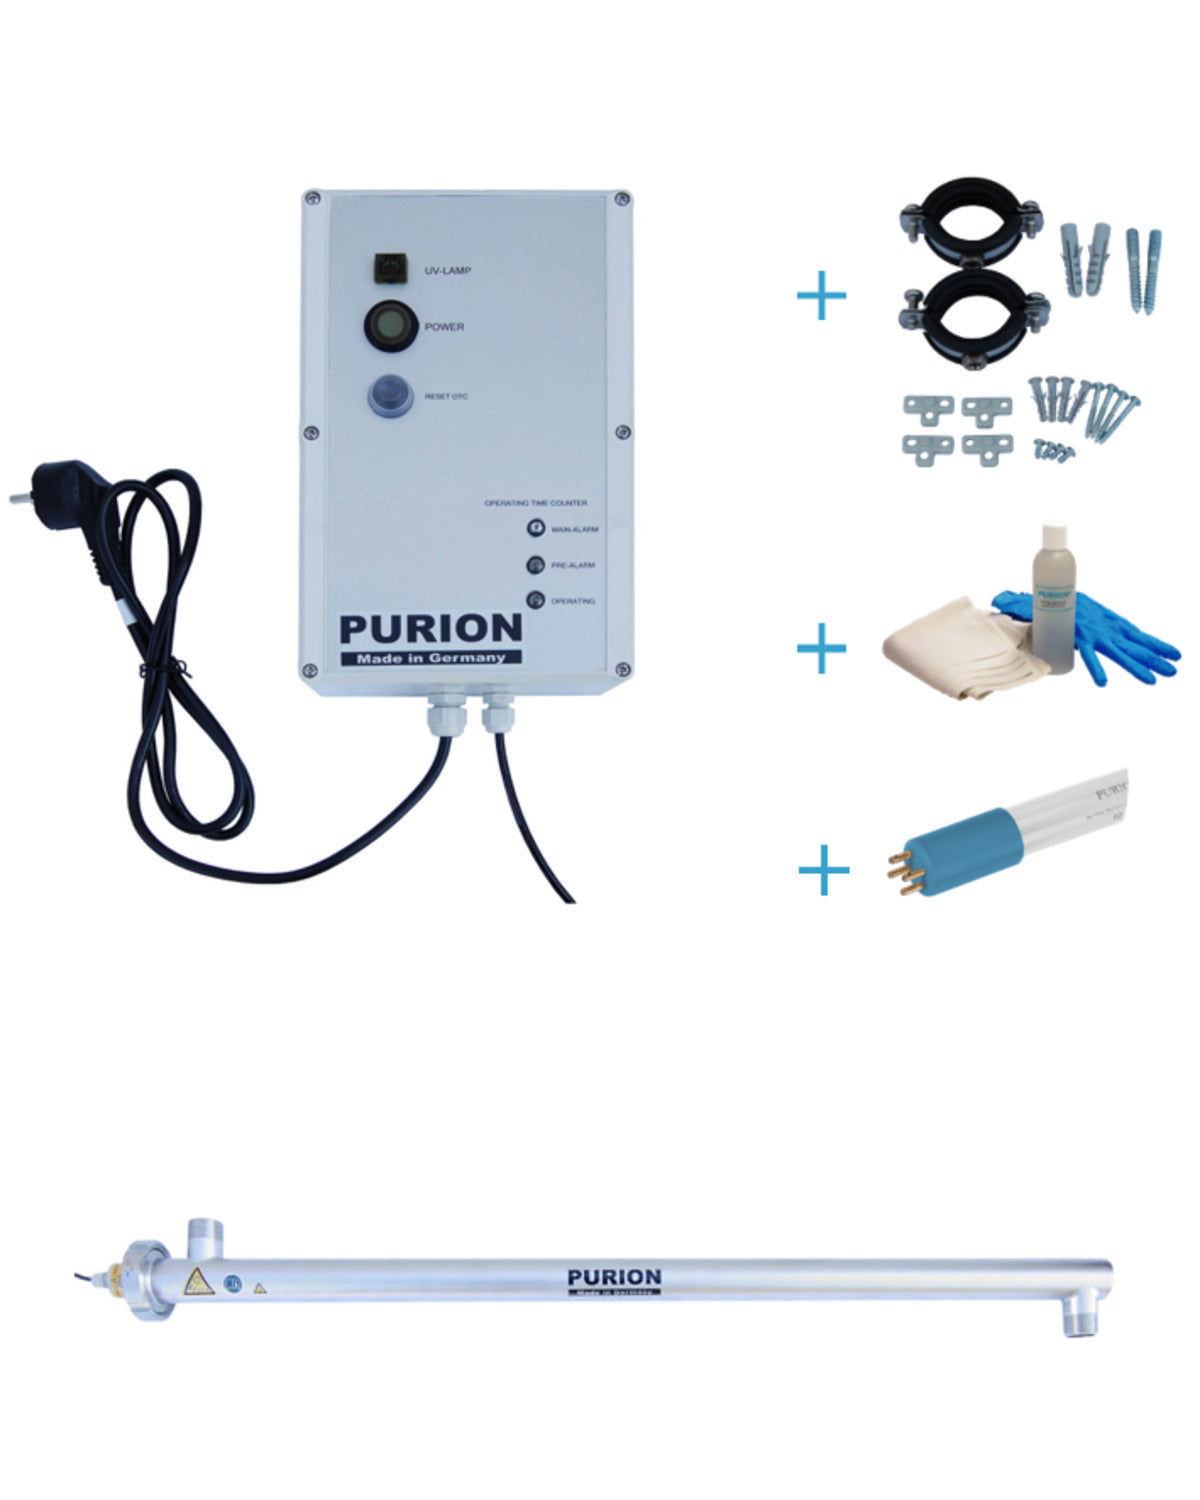 Das PURION 2500 36 W OTC Bundle der PURION GmbH ist eine innovative UV-C-Desinfektionsanlage, die für frisch desinfiziertes Trinkwasser sorgt.